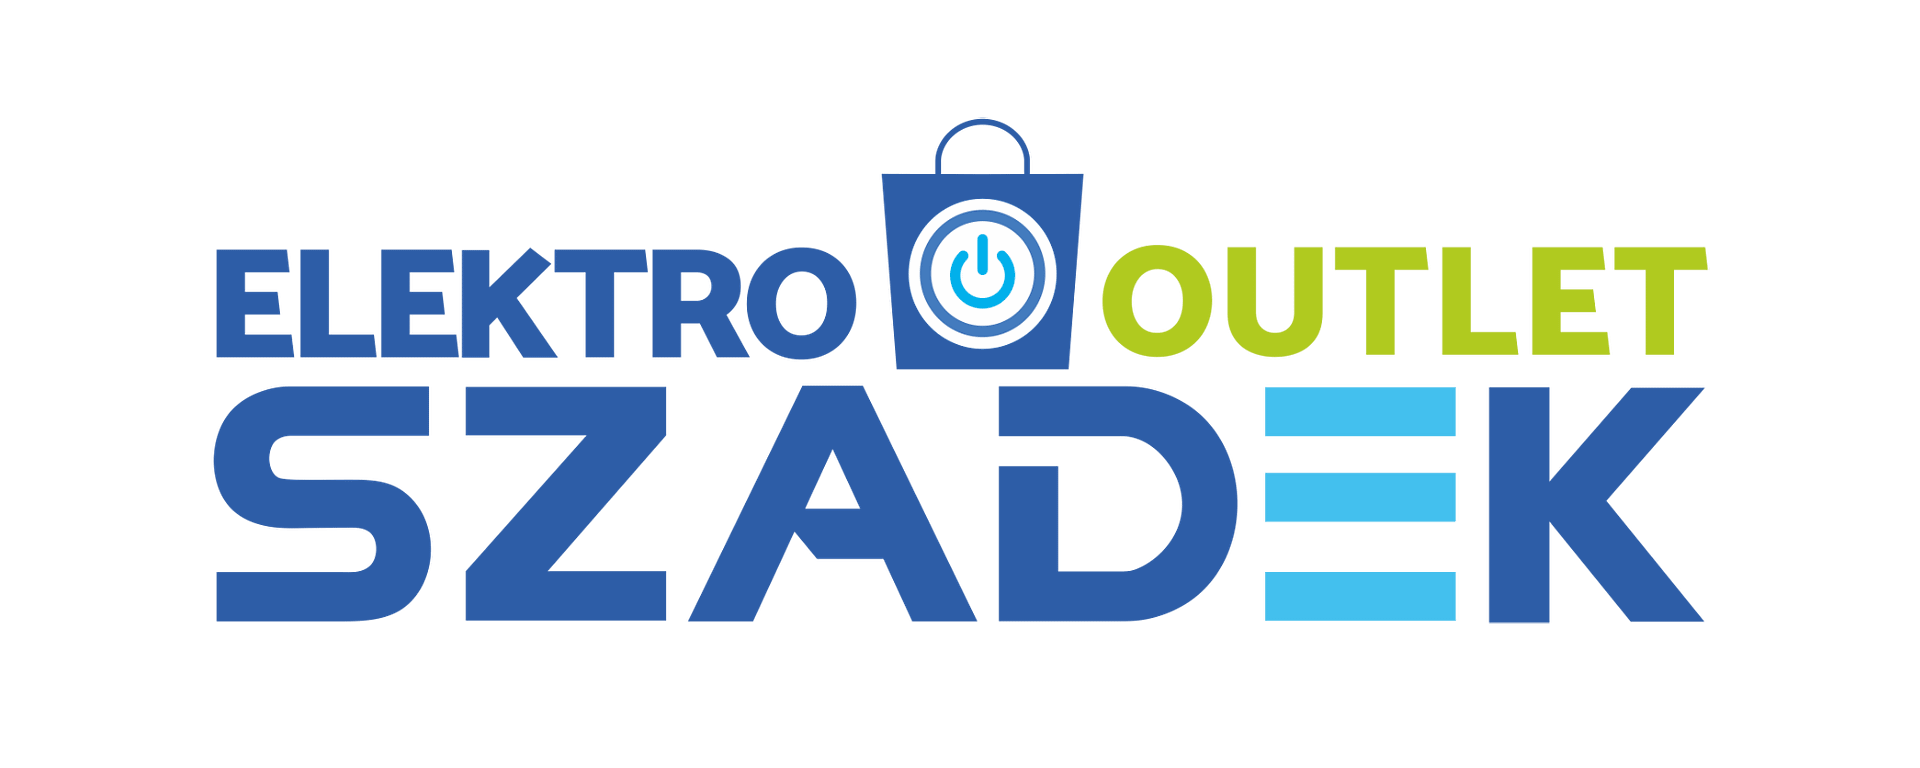 Elektro Outlet Szadek logo